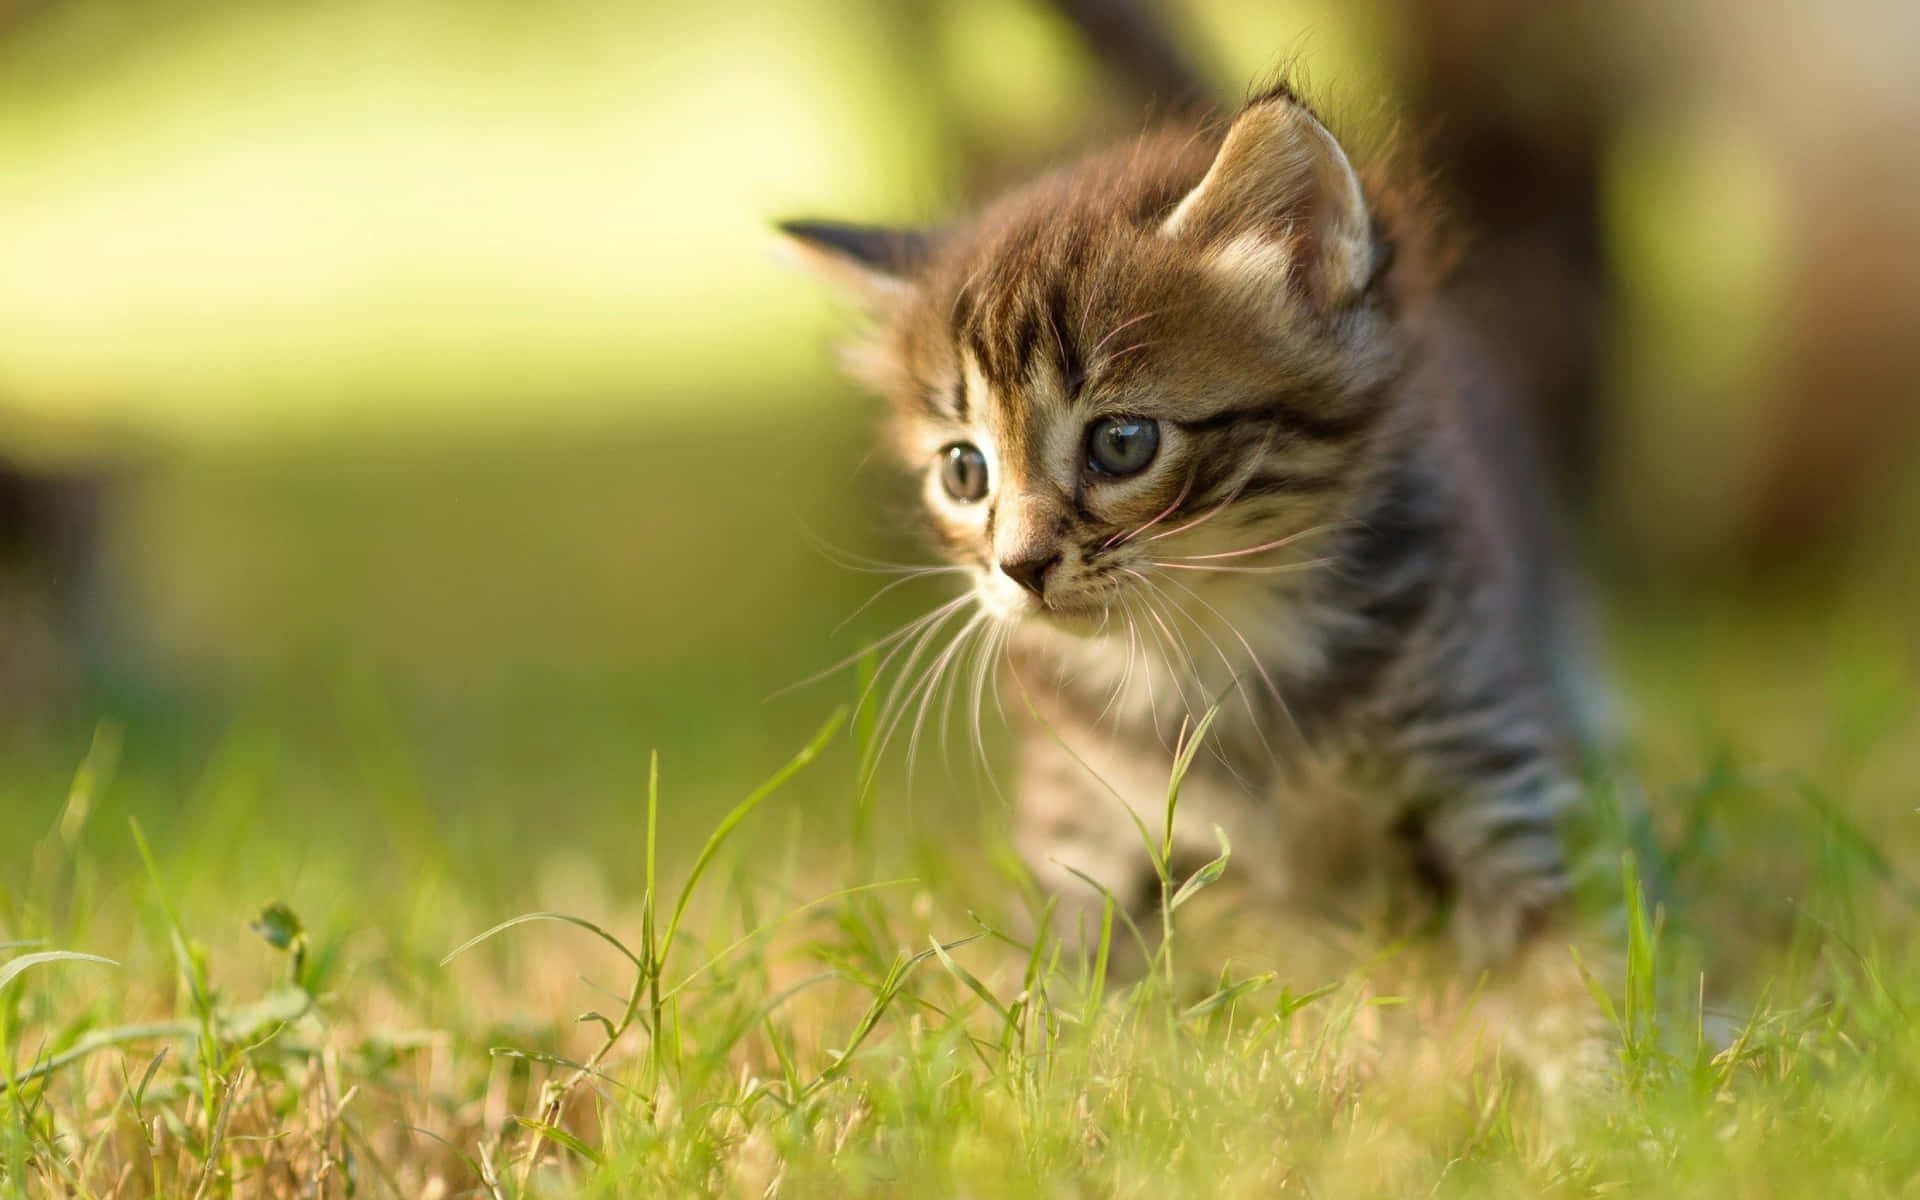 A Kitten Is Walking Through The Grass